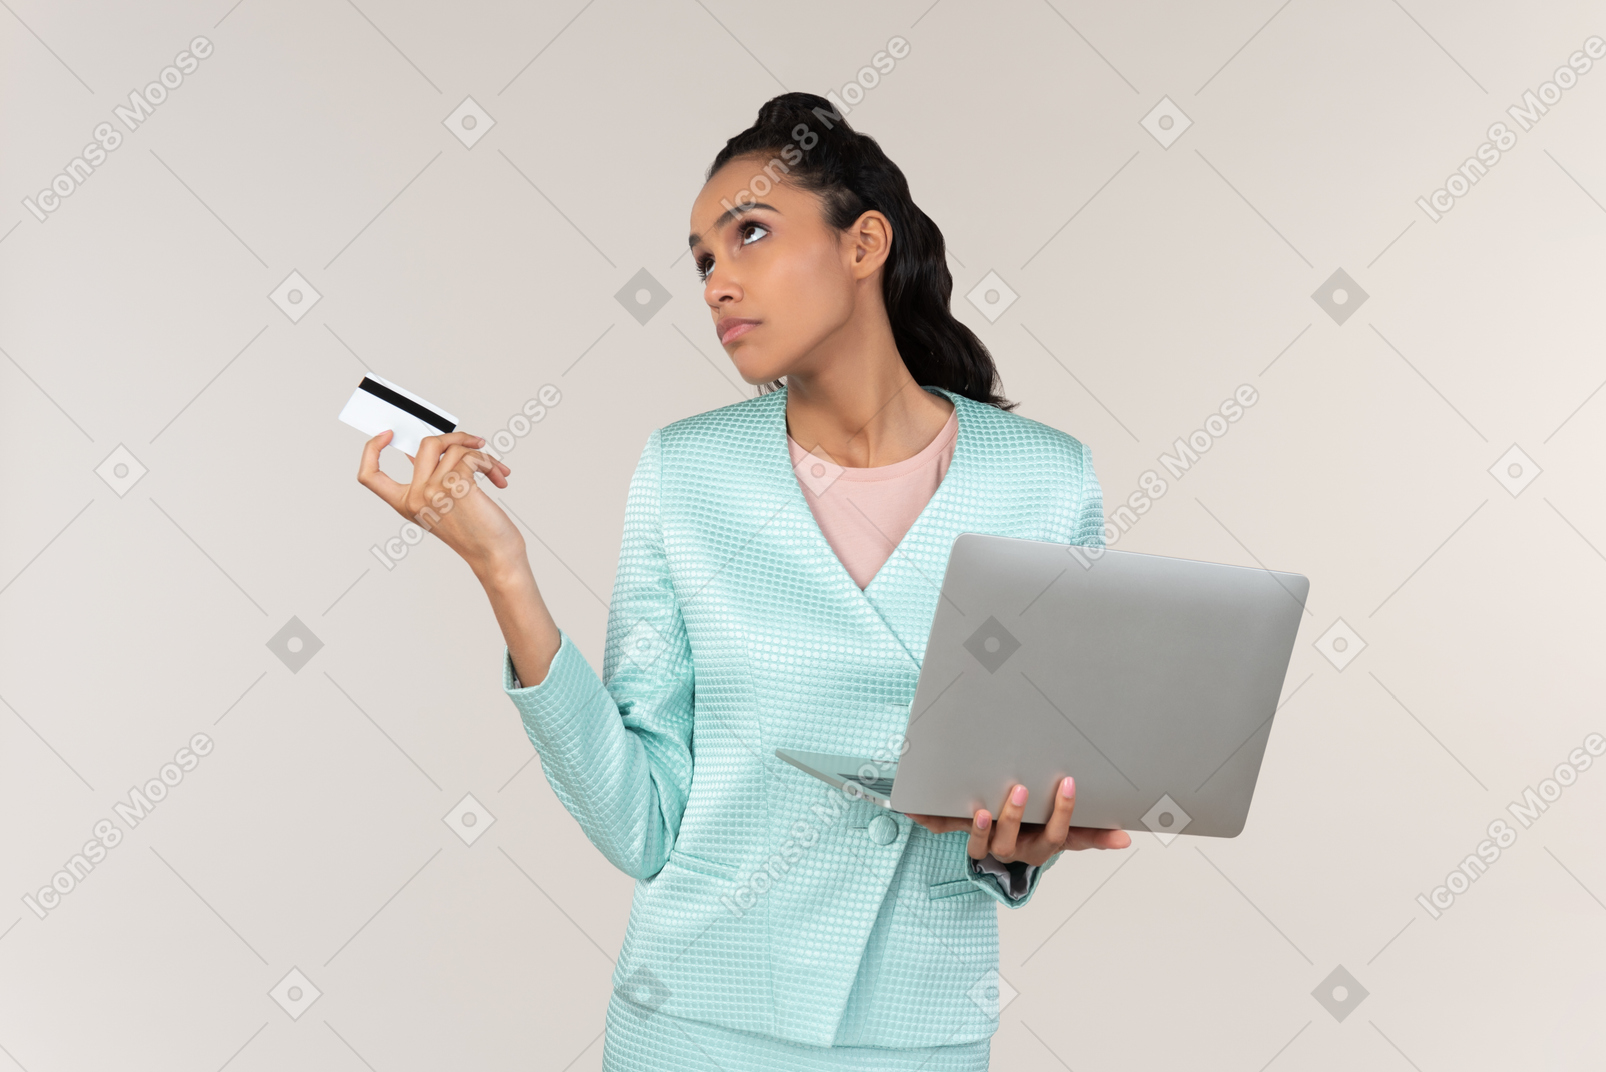 沉思的年轻afrowoman拿着笔记本电脑和银行卡